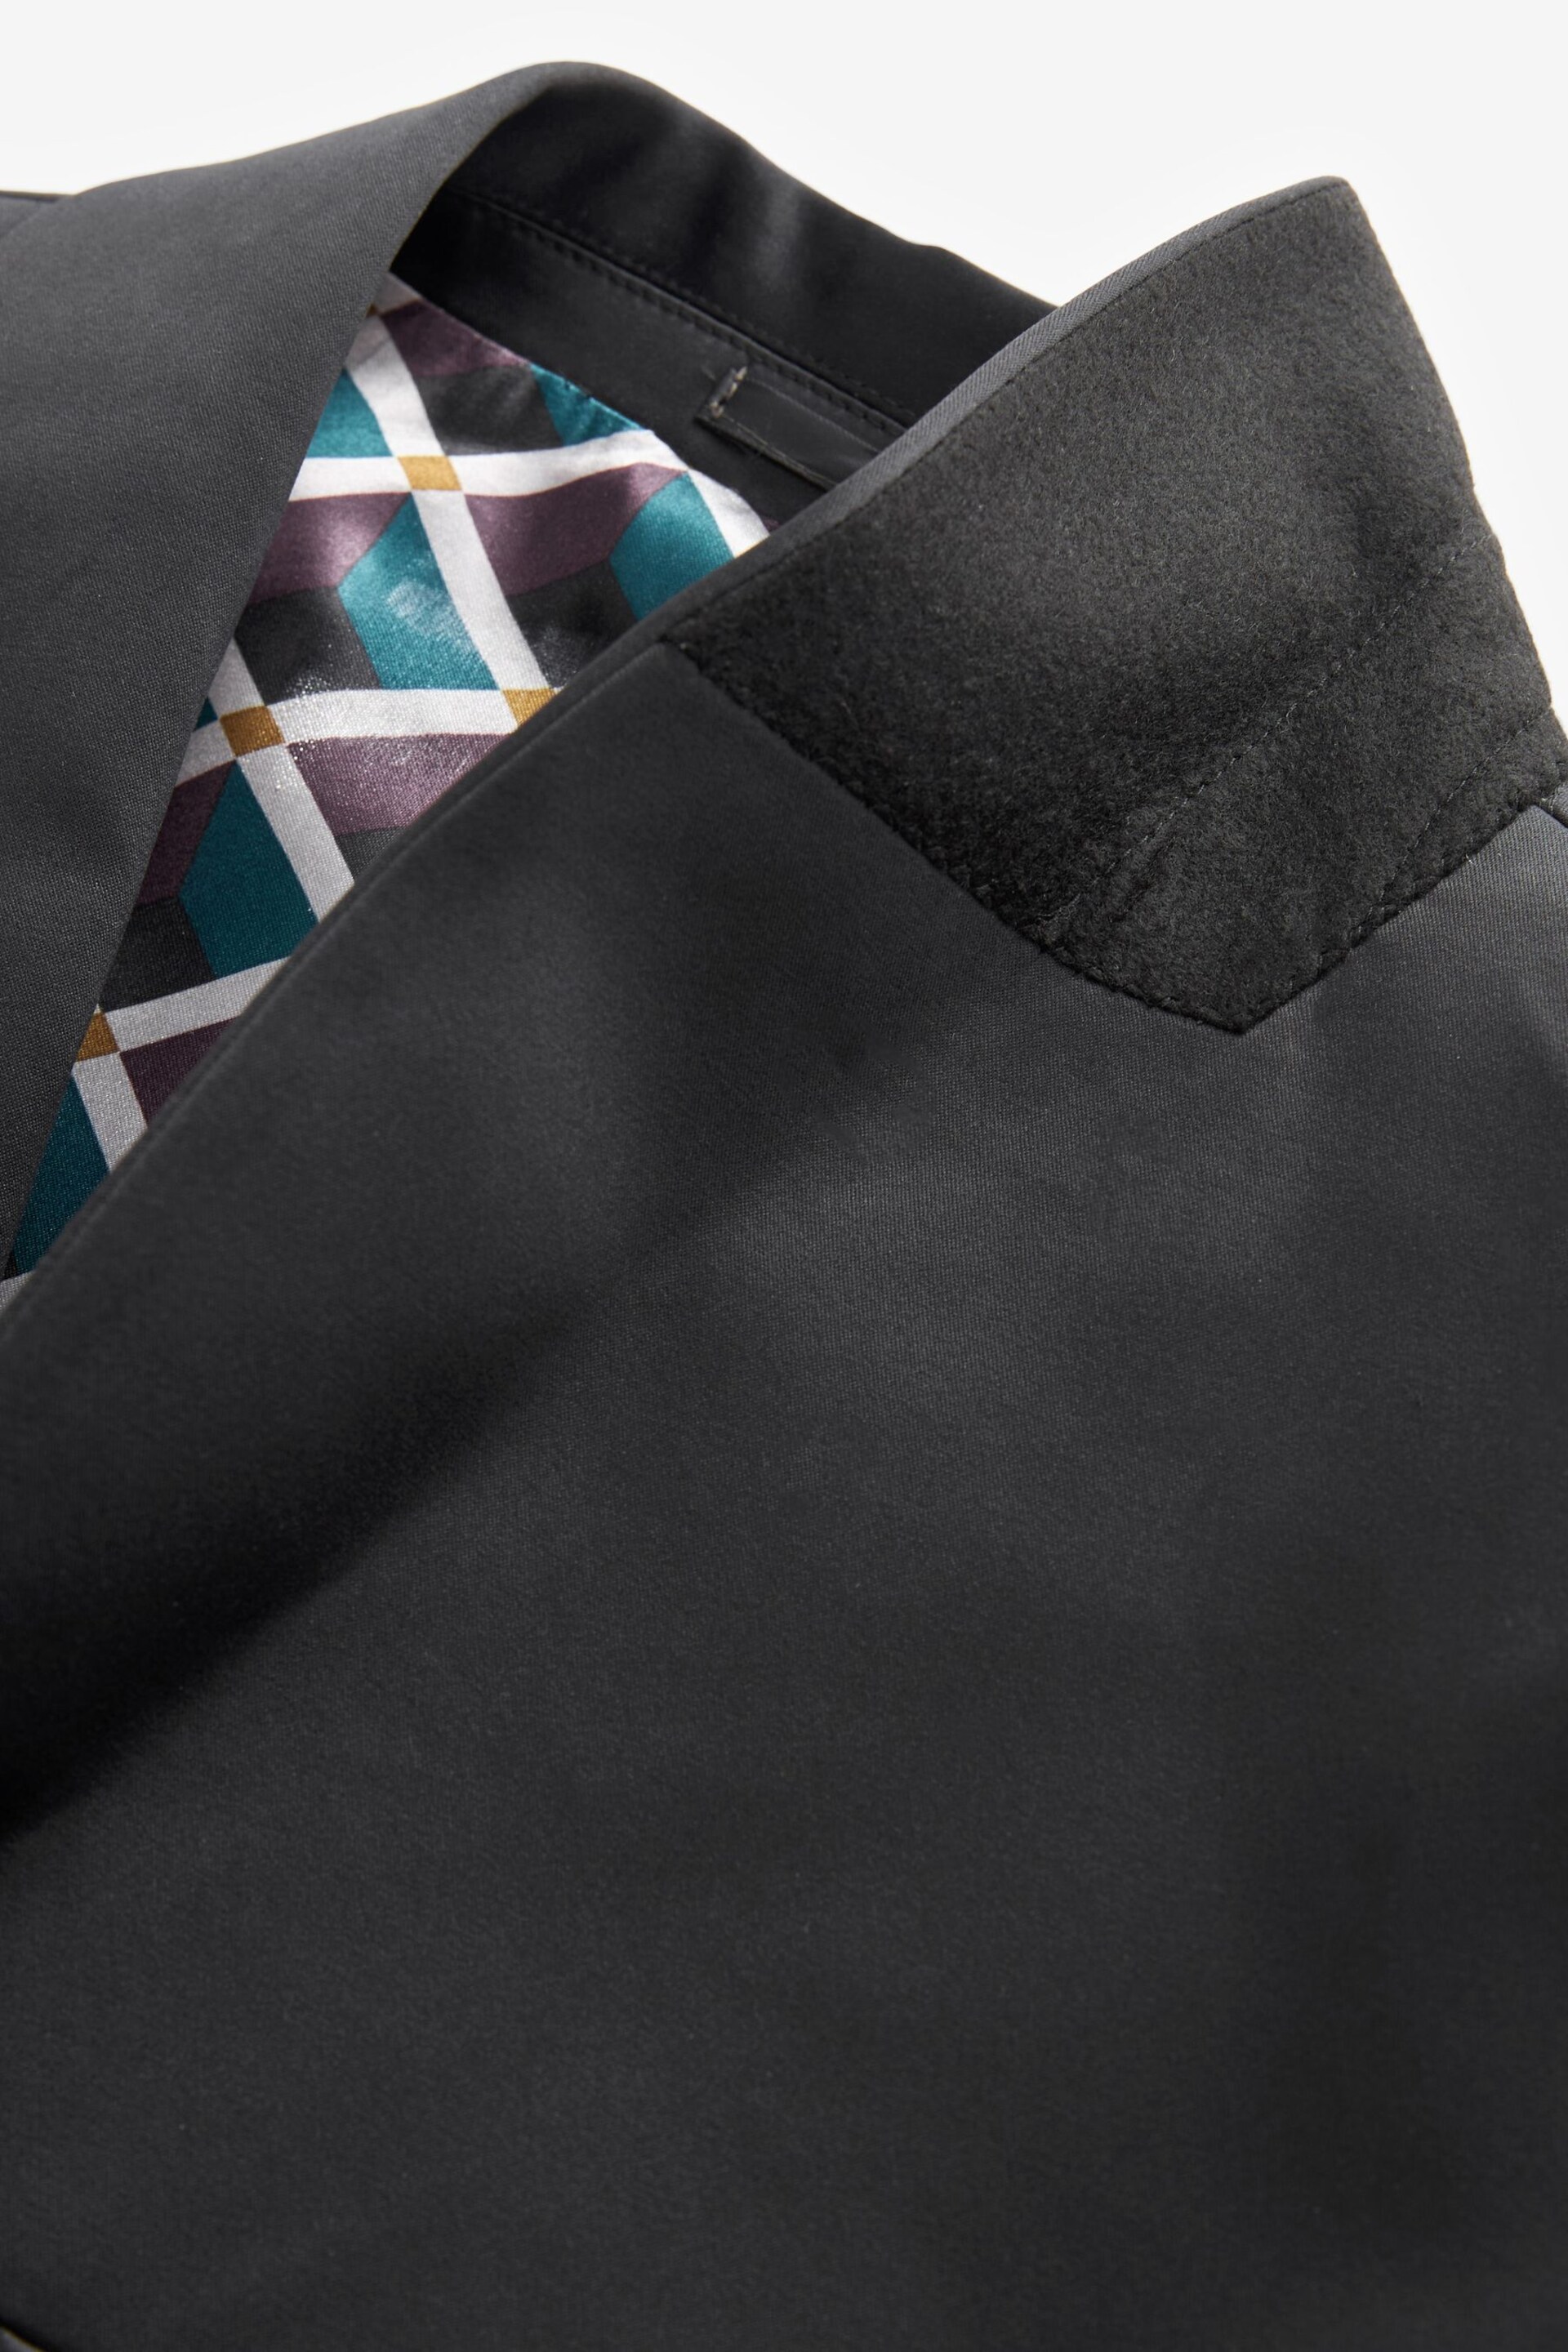 Black Satin Tuxedo Jacket - Image 8 of 10